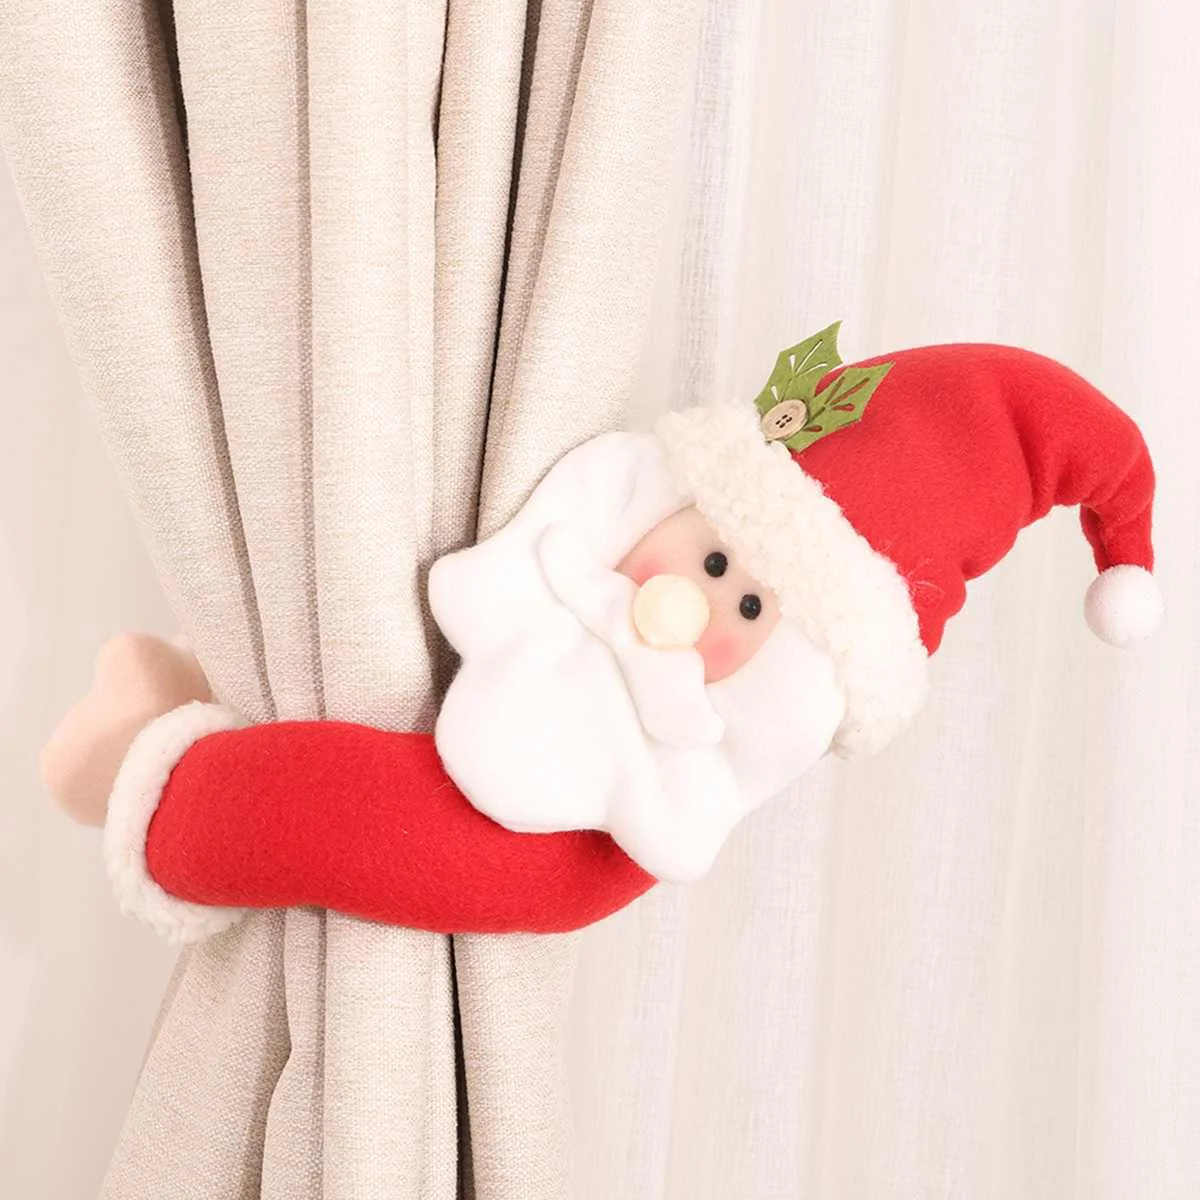 Рождество мультфильм кукла занавес Tieback галстук пряжка аксессуары для украшения штор рождественские украшения для дома - Цвет: Santa Claus